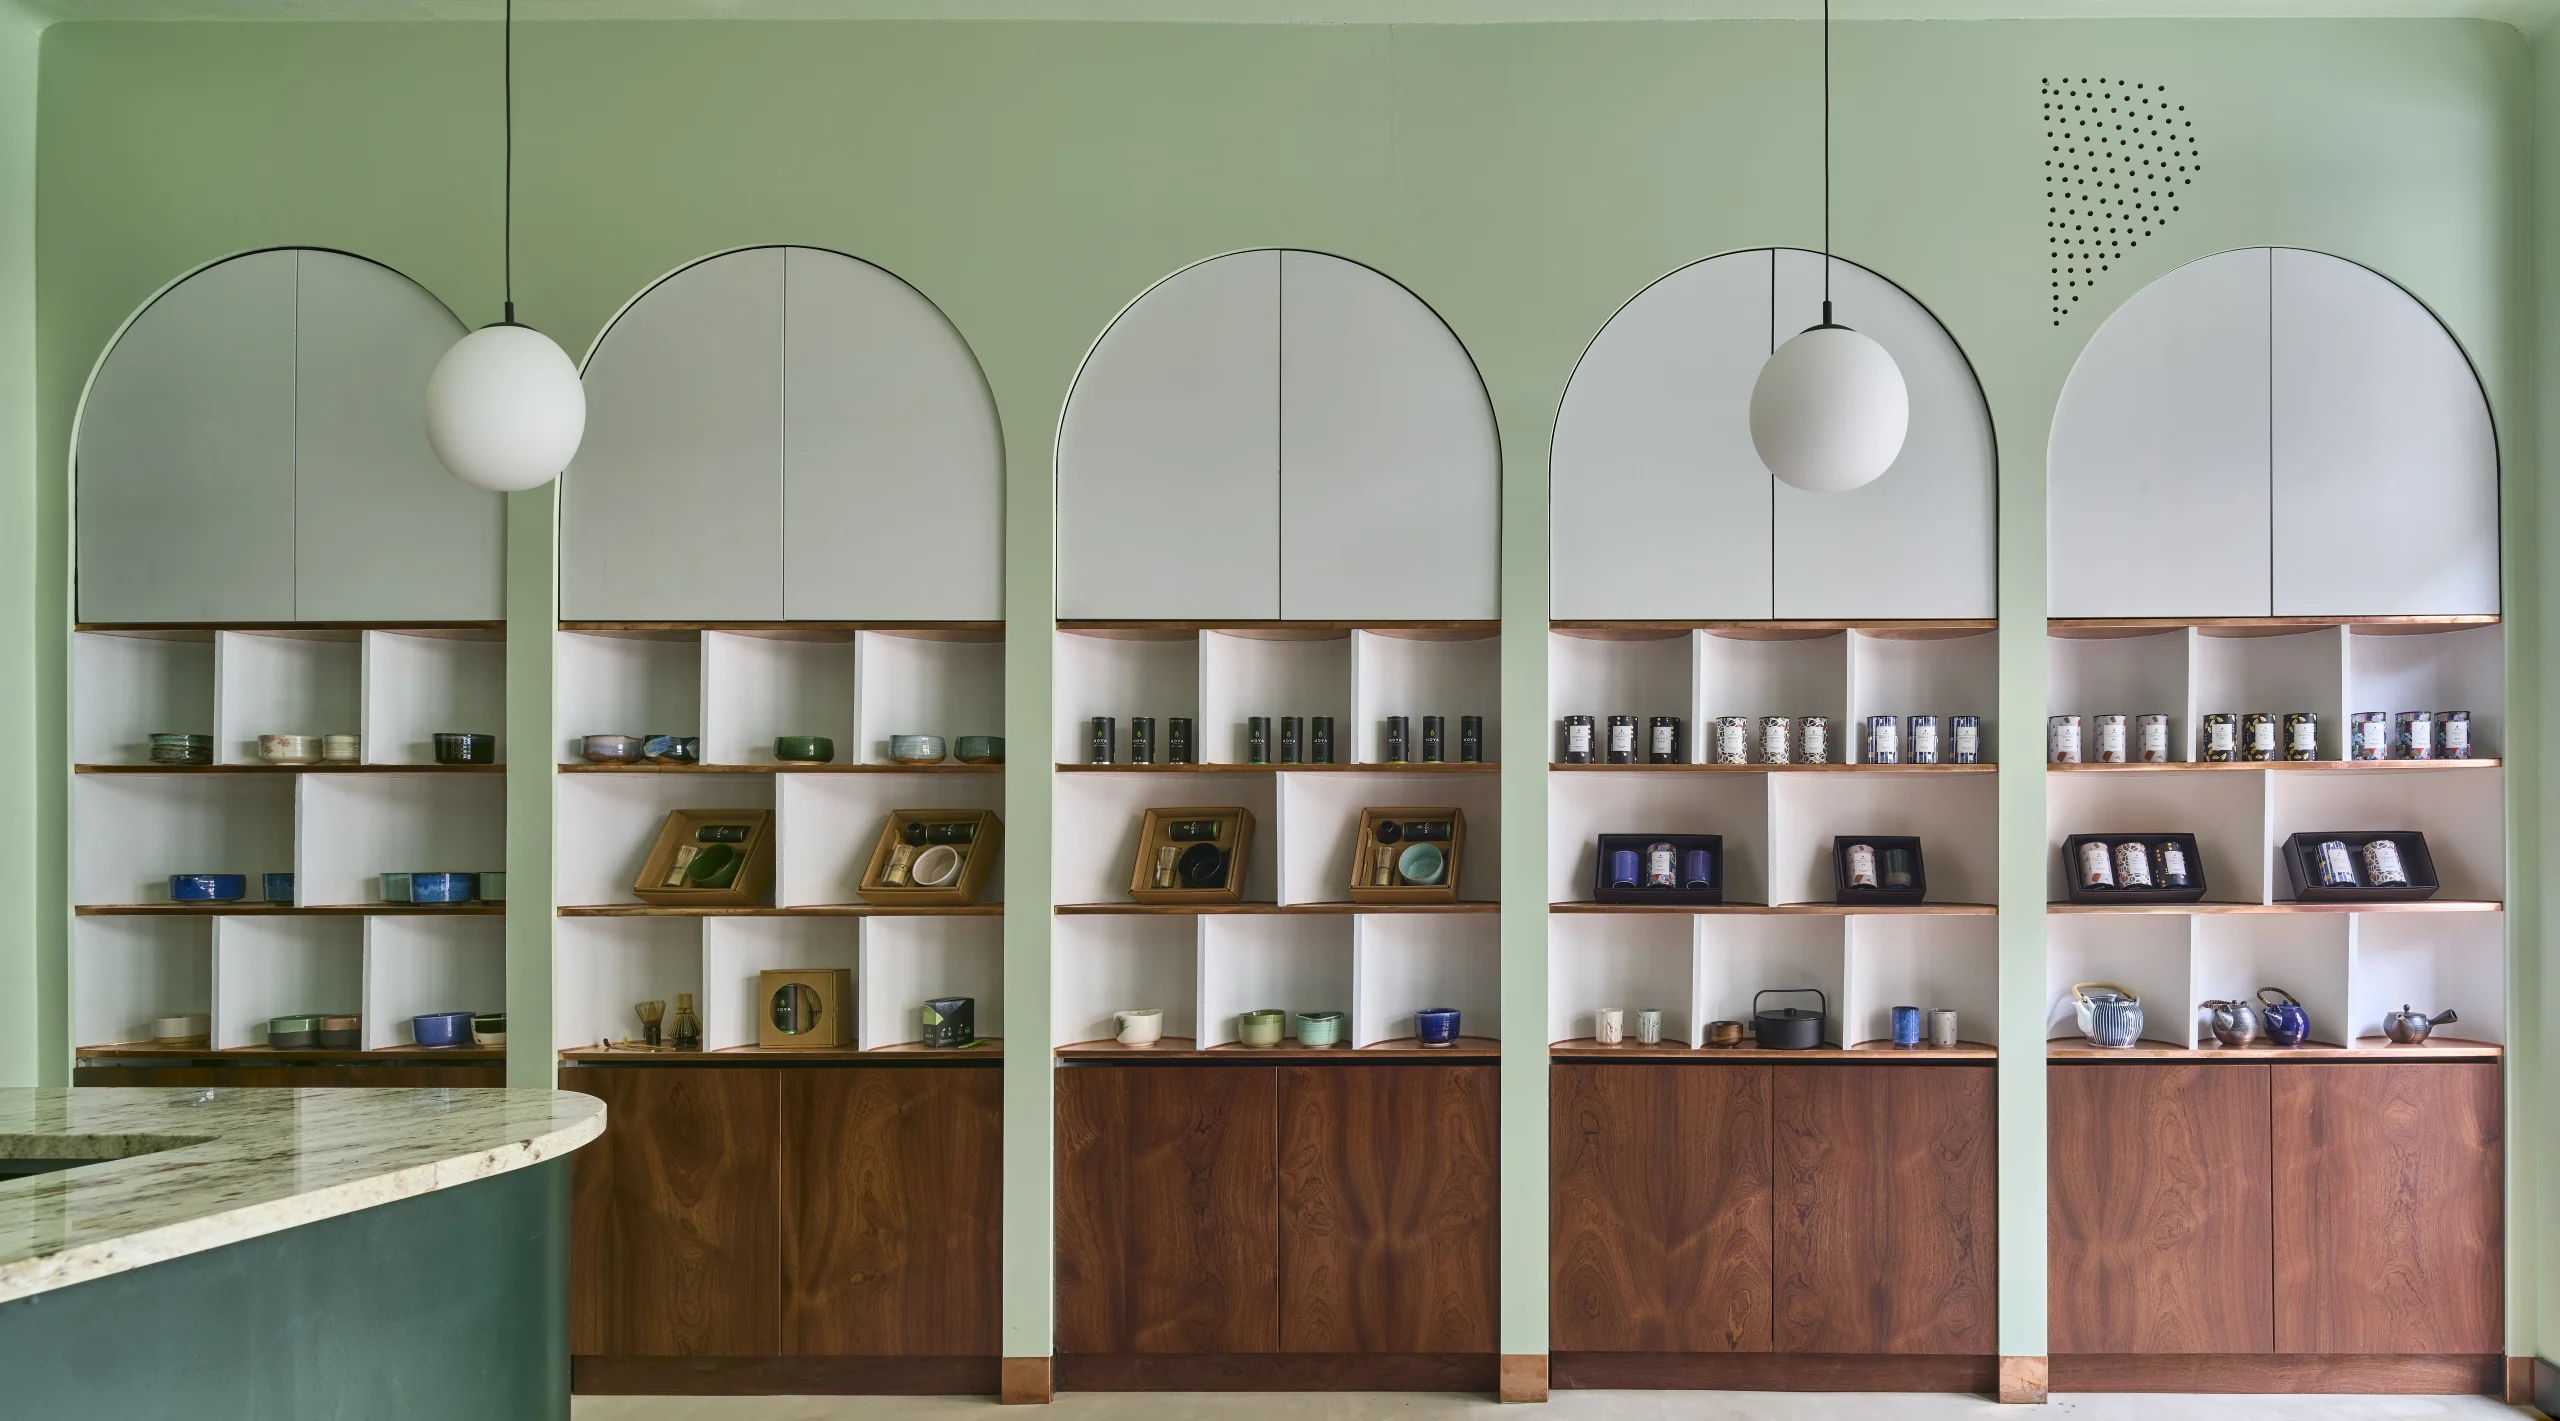 green walls, shelf, tea, tearoom